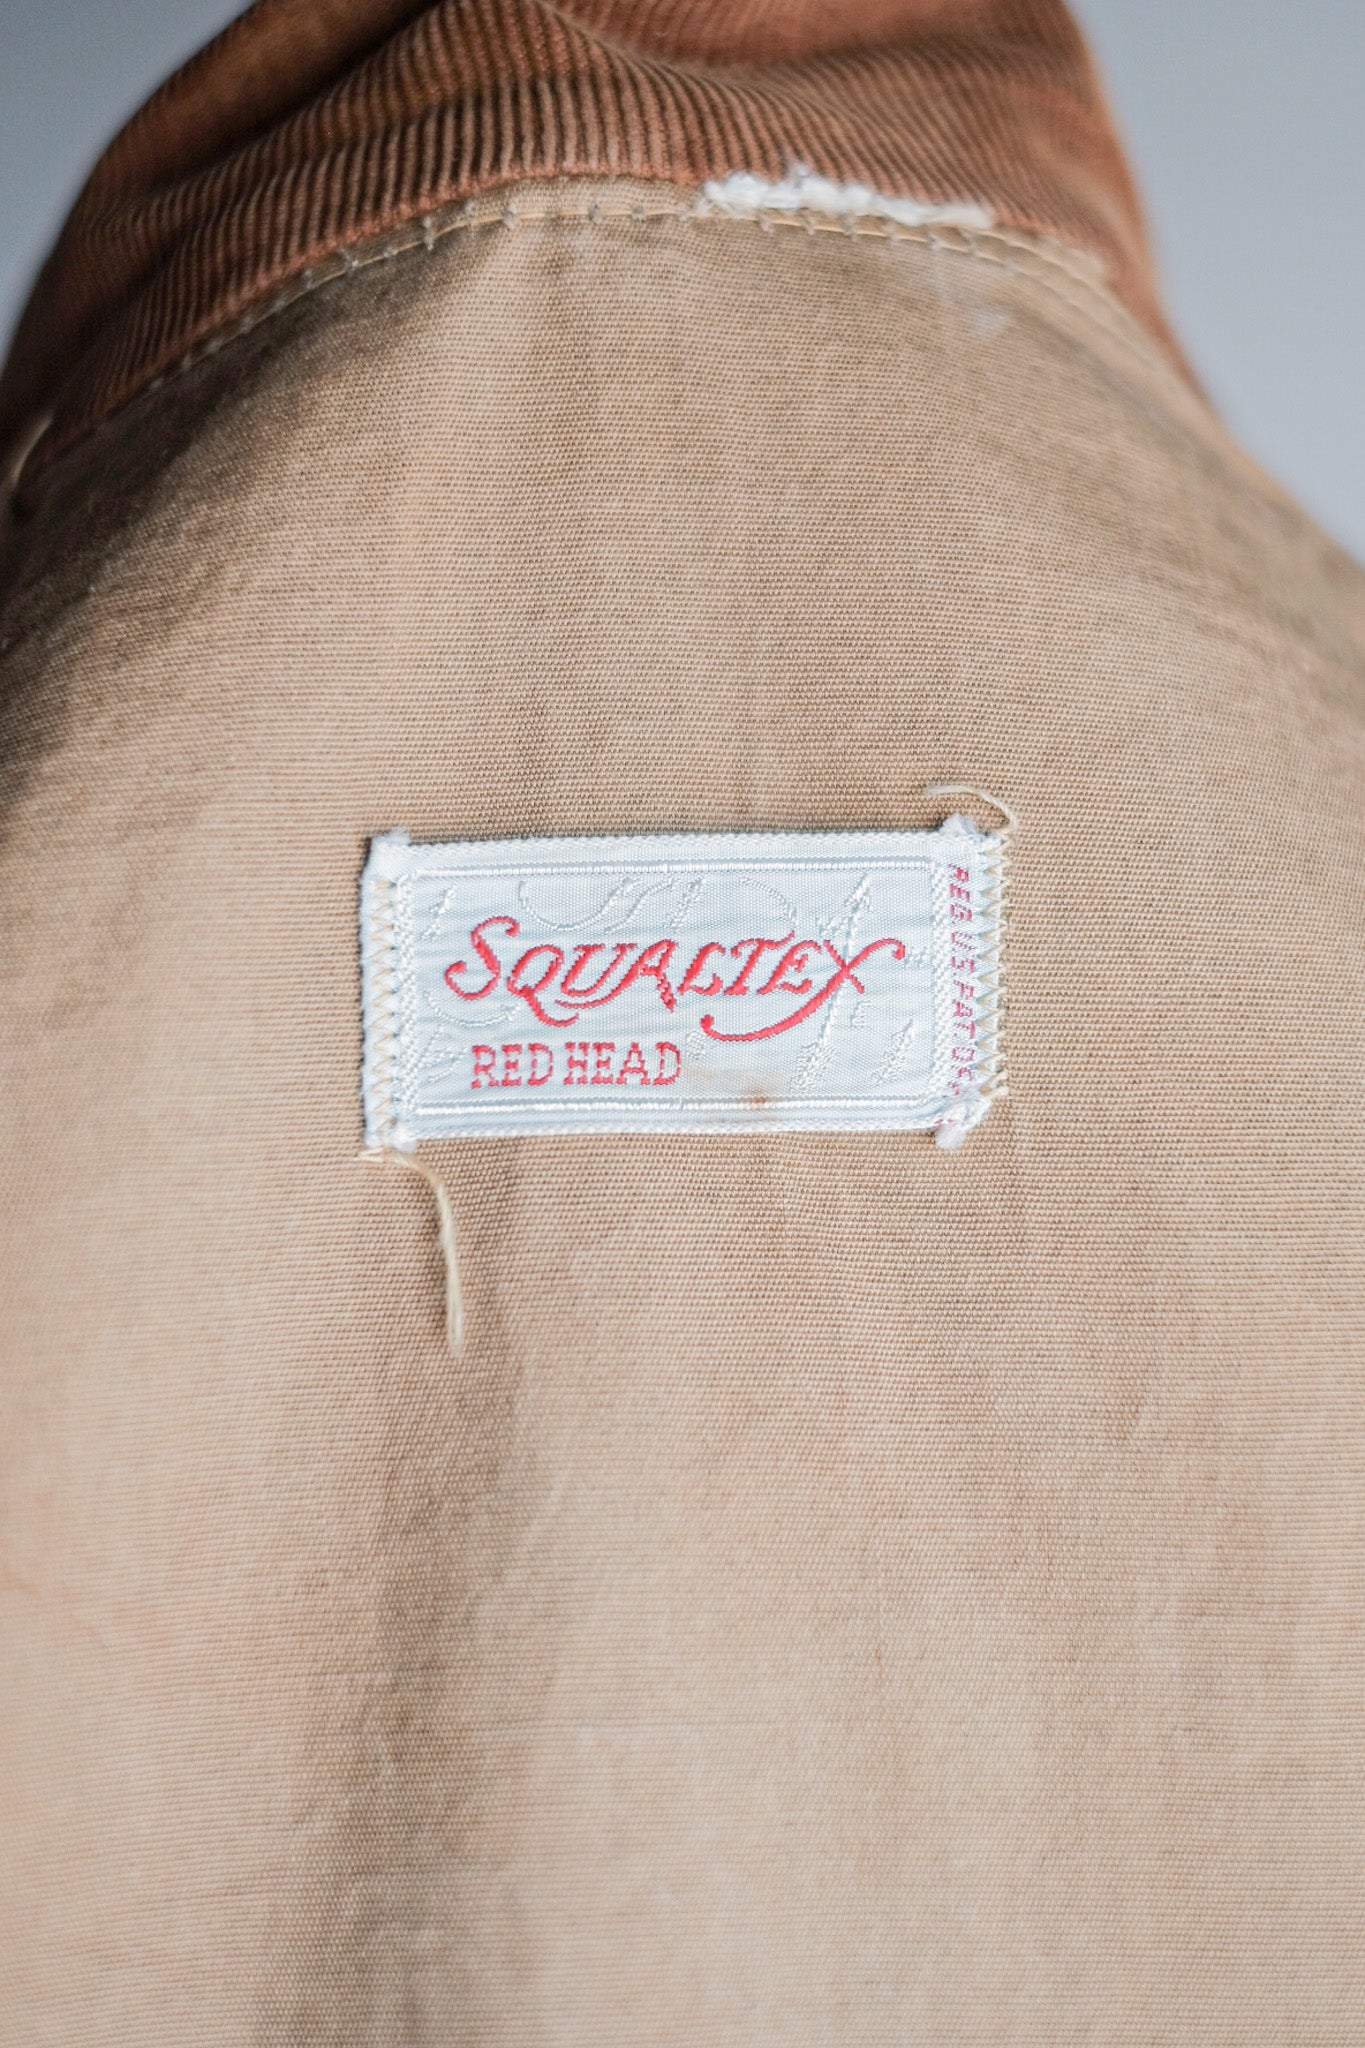 [~ 50 년대] American Vintage Hunting Jacket "Redhead Squaltex"